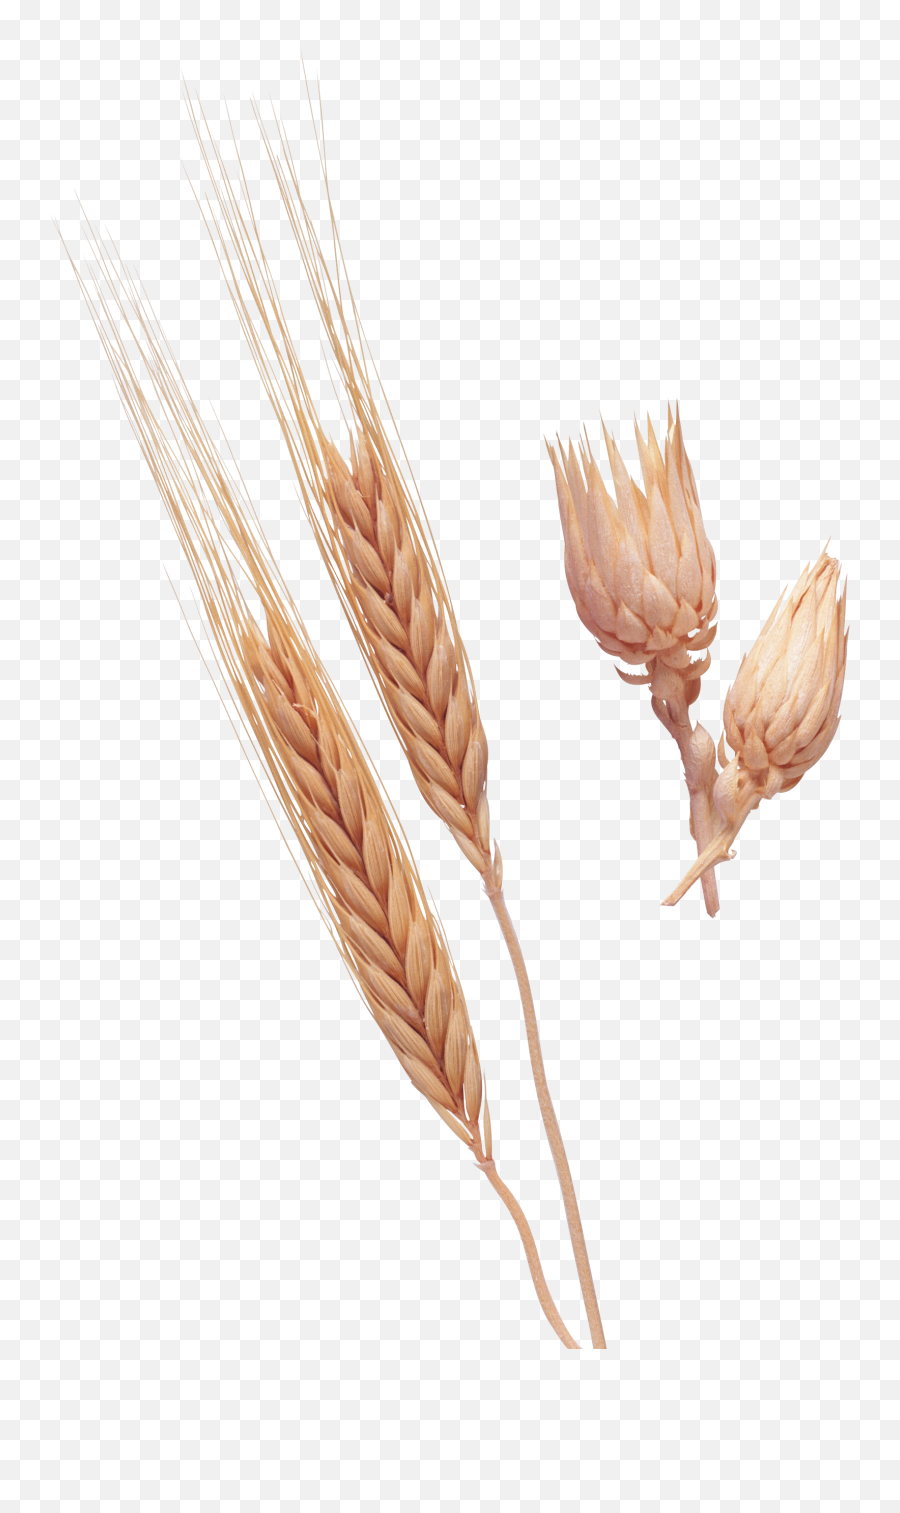 Wheat Png Image - Bonheur Est Dans Le Pré,Wheat Transparent Background